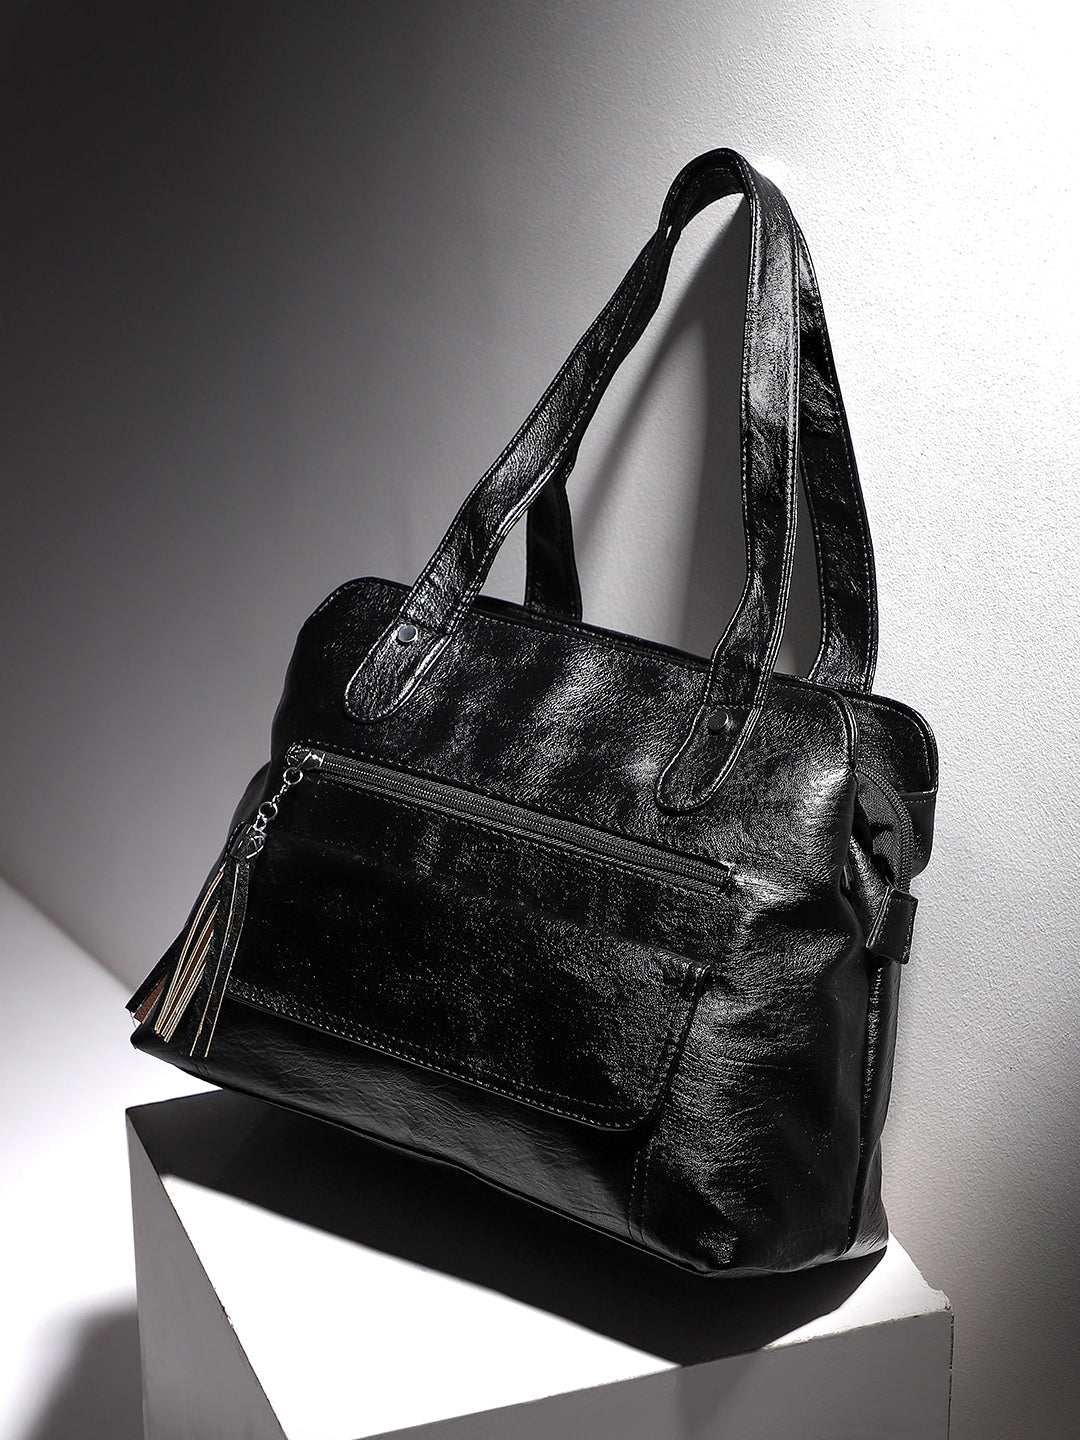 Tassel Flap Handbag - Black